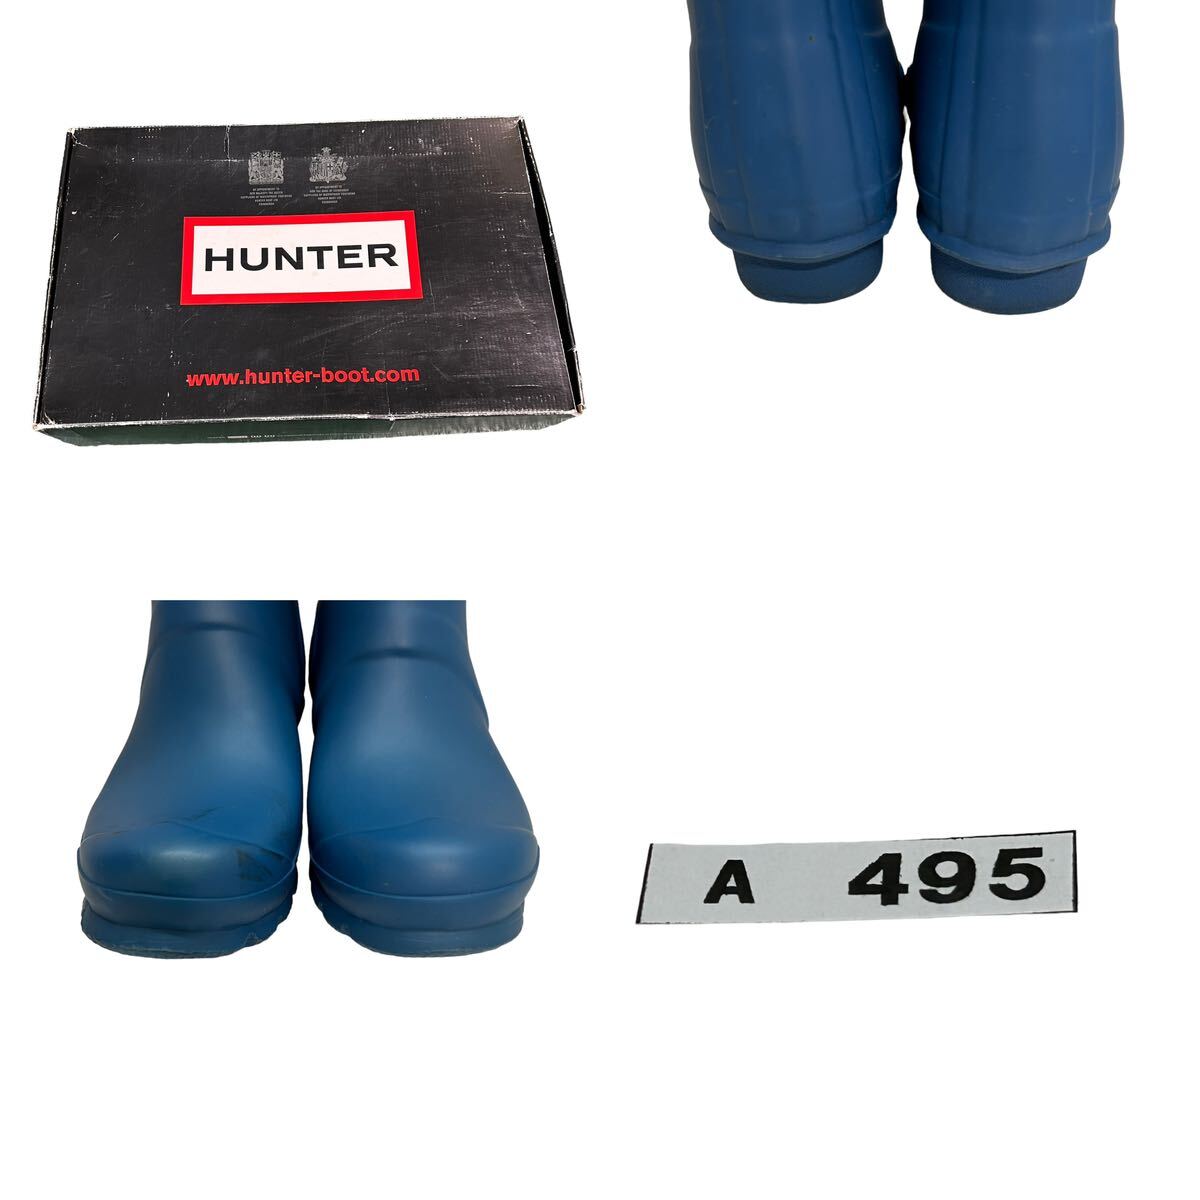 A495B HUNTER Hunter влагостойкая обувь сапоги EU37 UK4 примерно 23cm голубой Raver с коробкой 